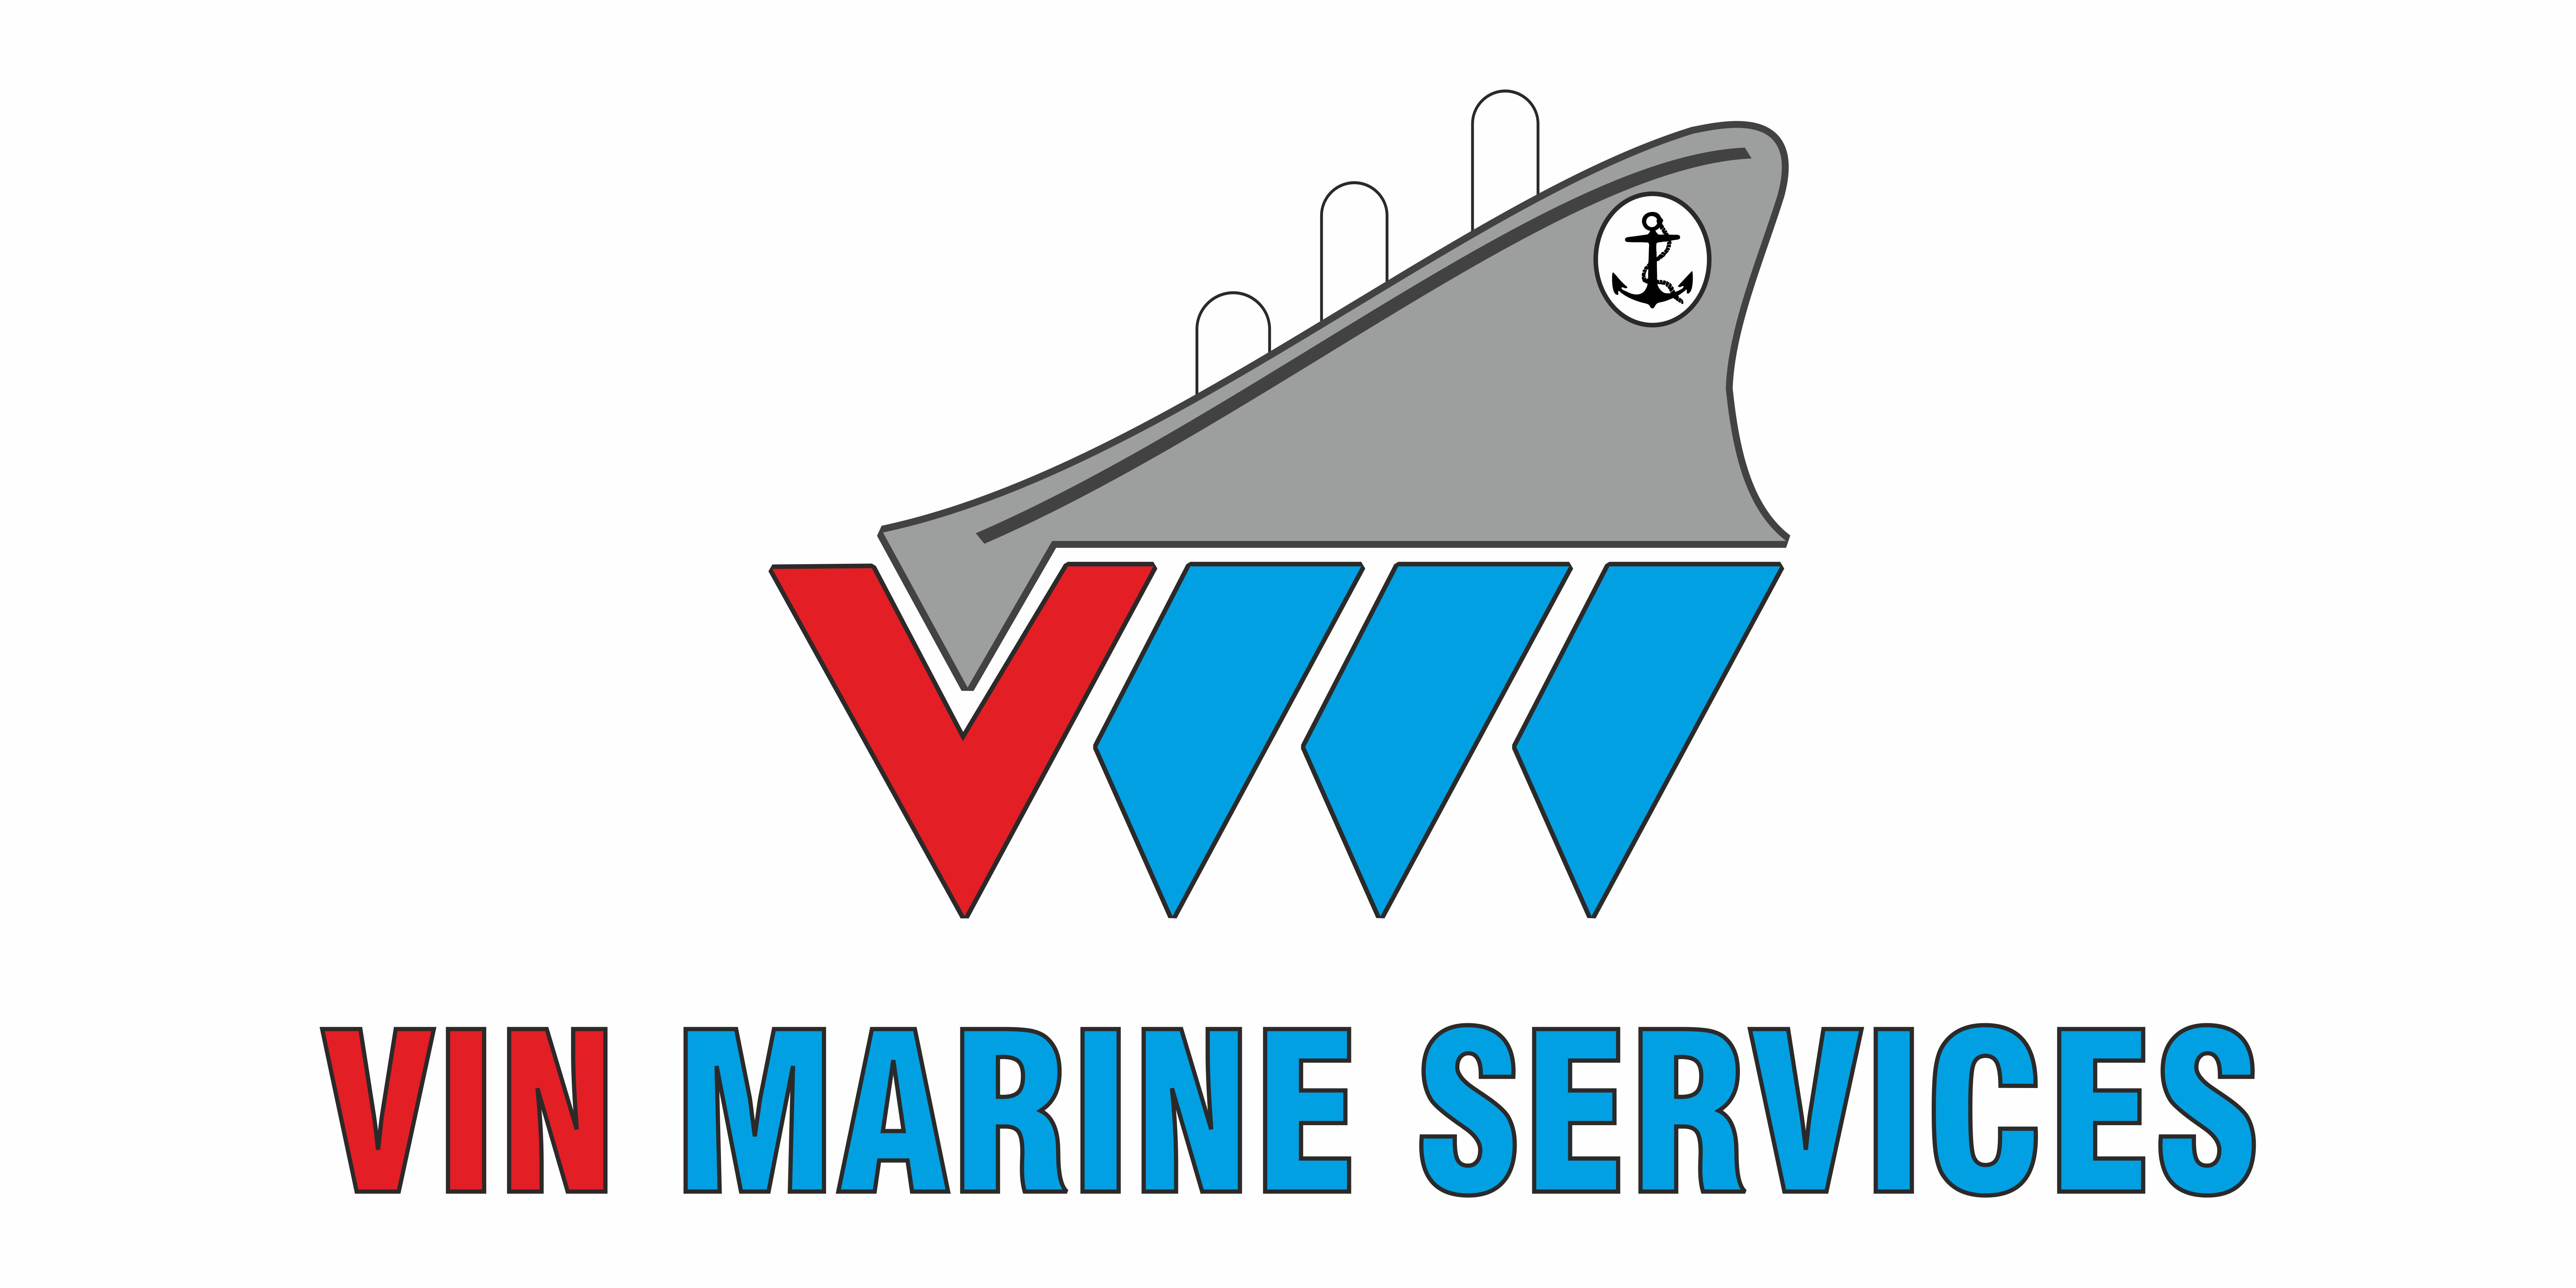 Vin Marine Services